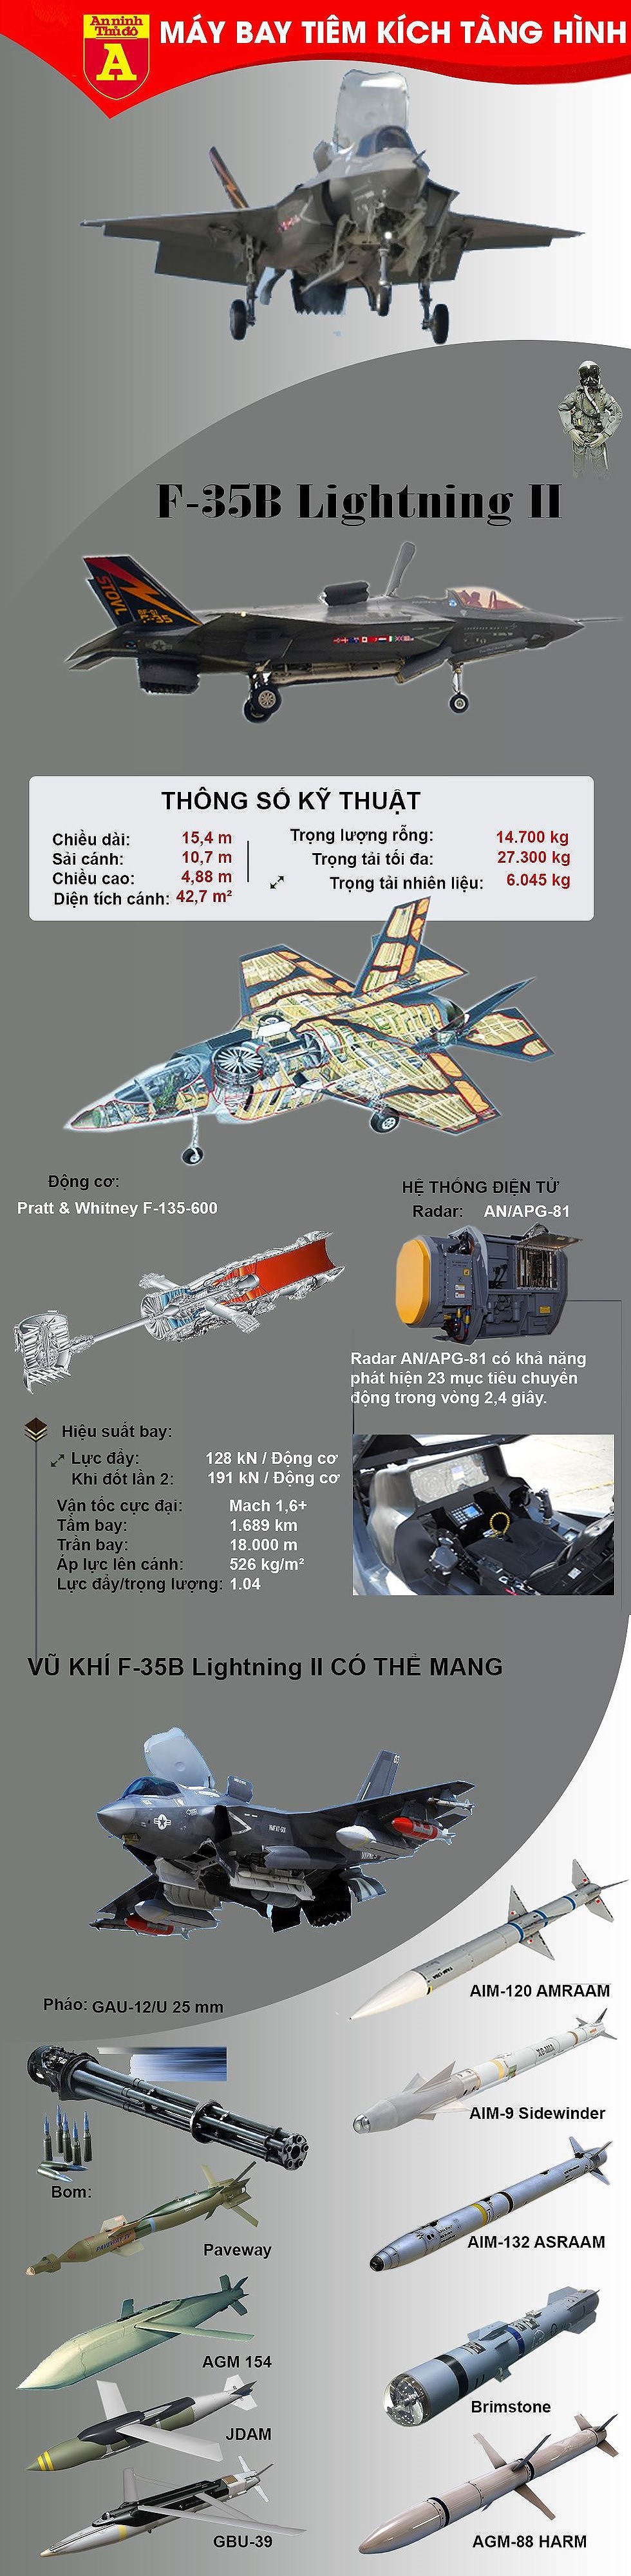 [Infographic] Trang bị thêm 42 chiếc F-35B, Nhật khiến Trung Quốc lo ngại nếu tranh chấp trên biển - Ảnh 1